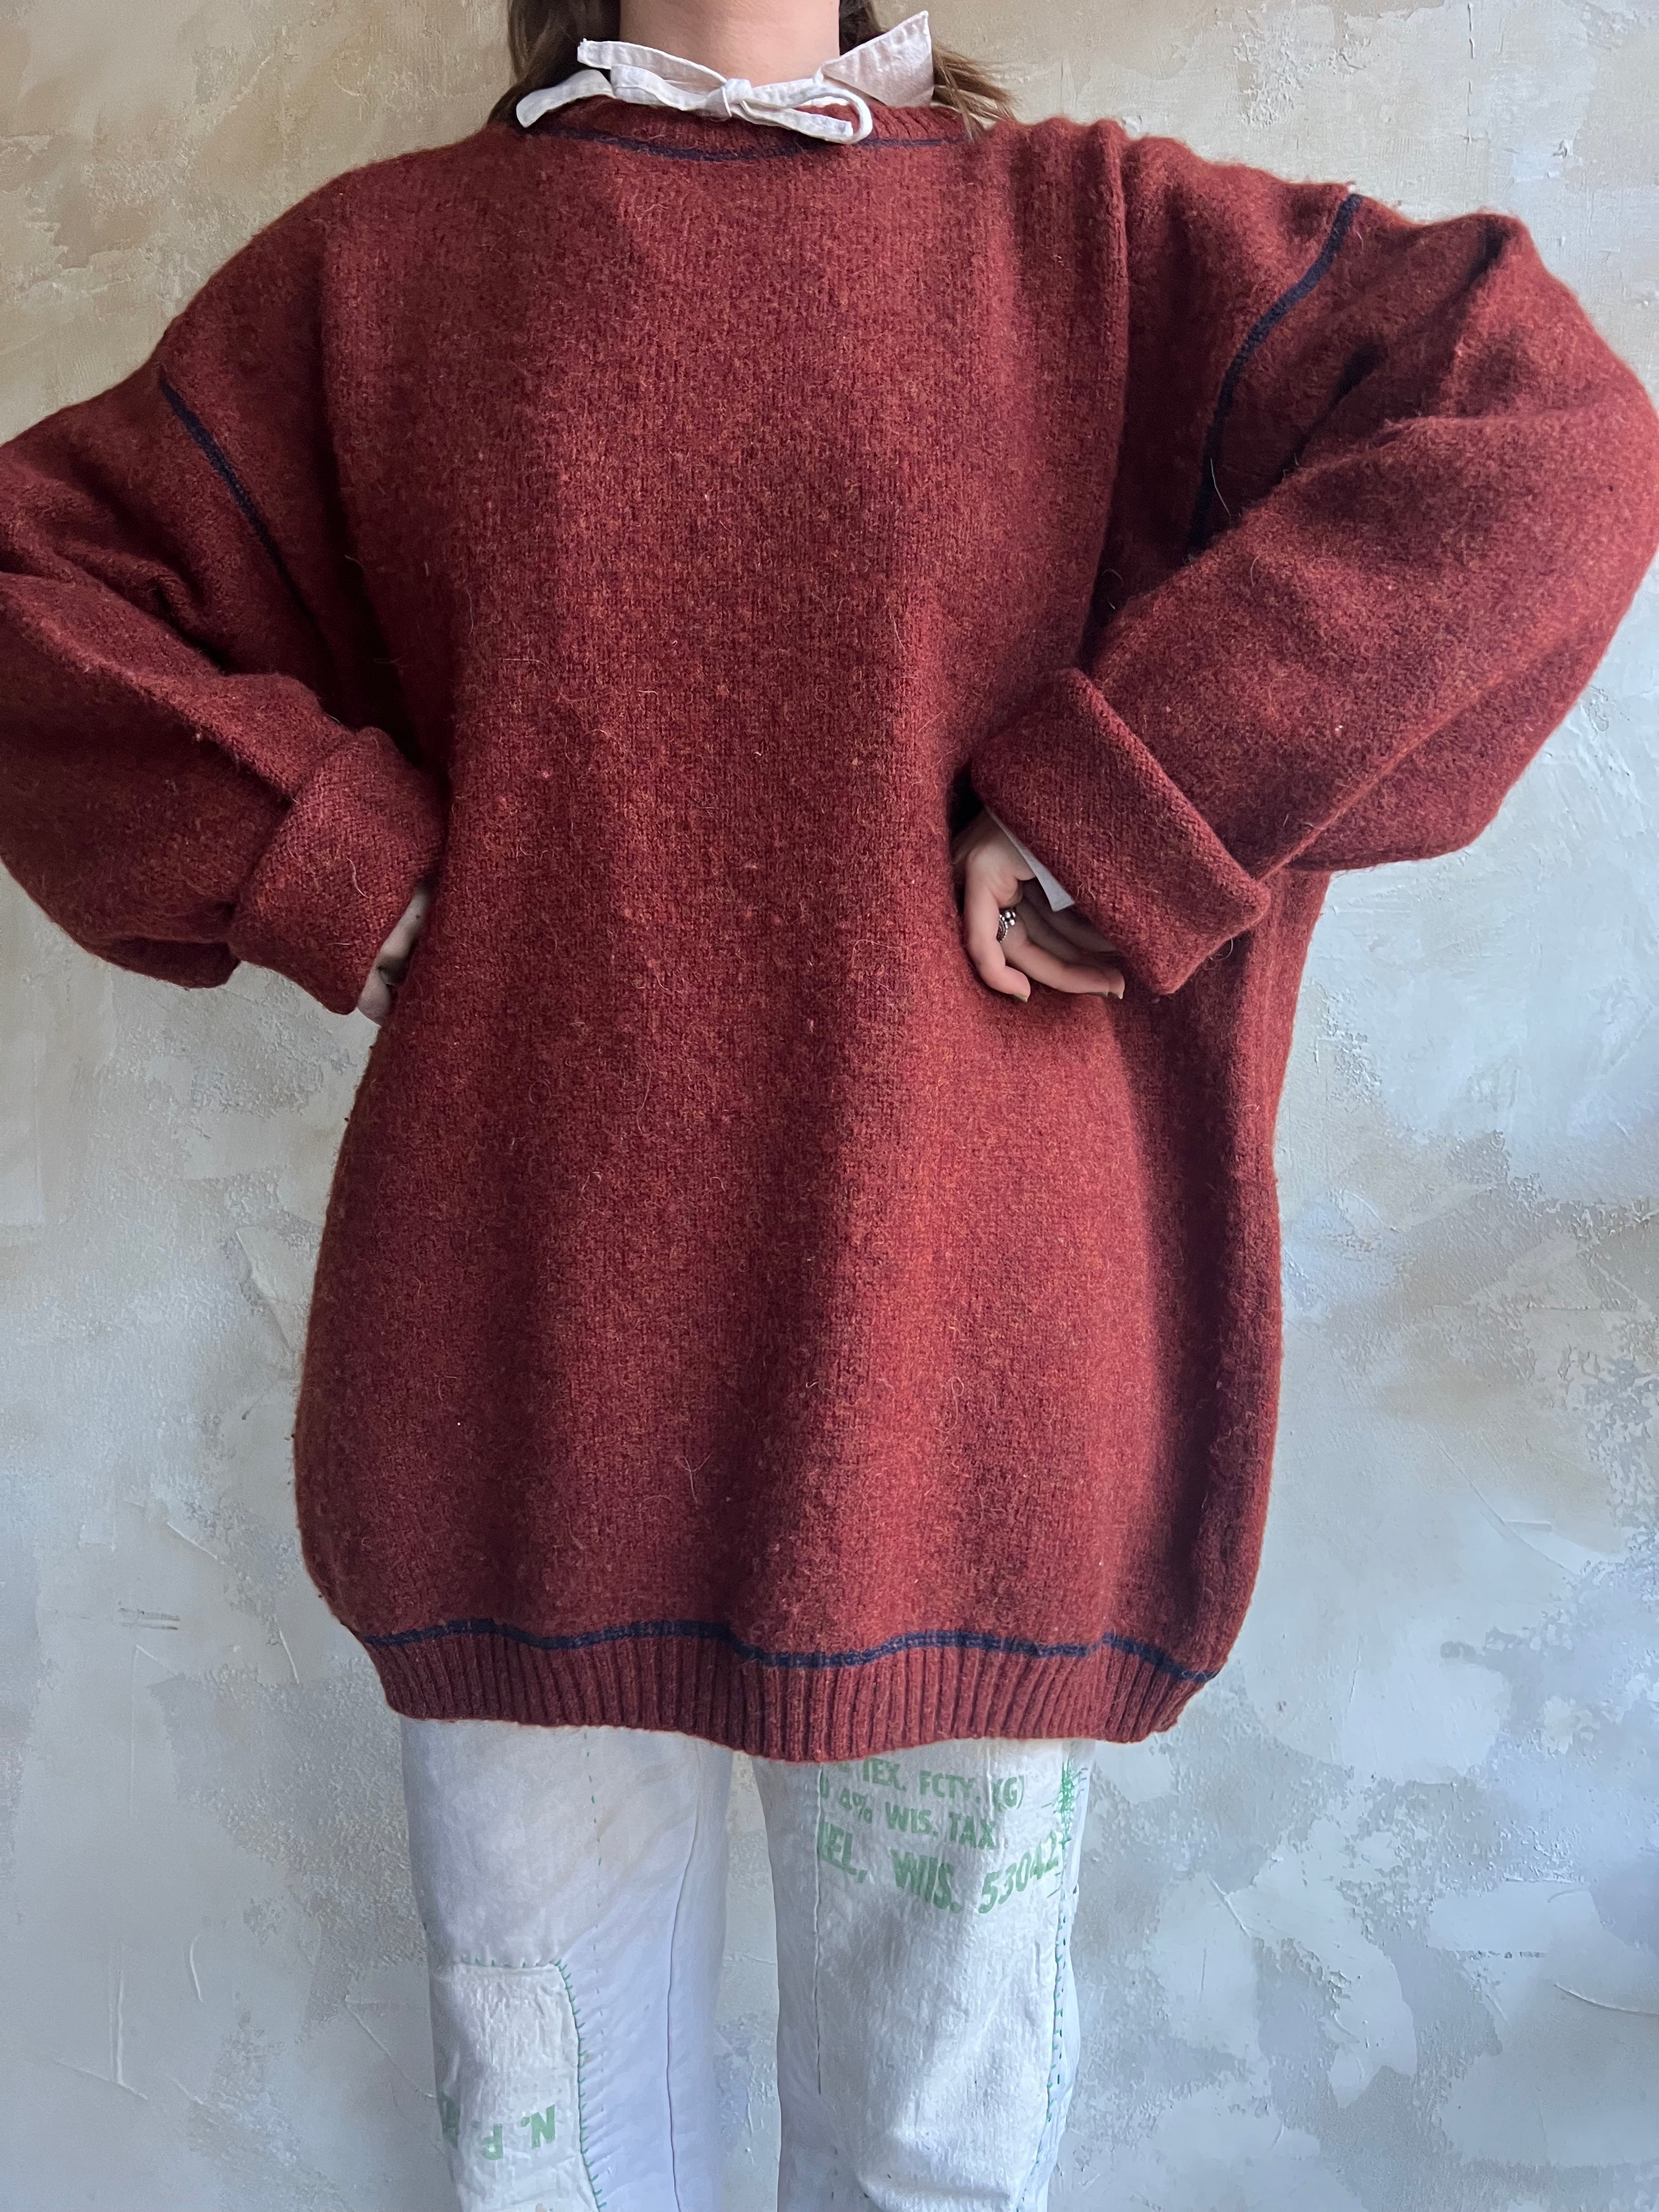 Rust Wool Woolrich Sweater